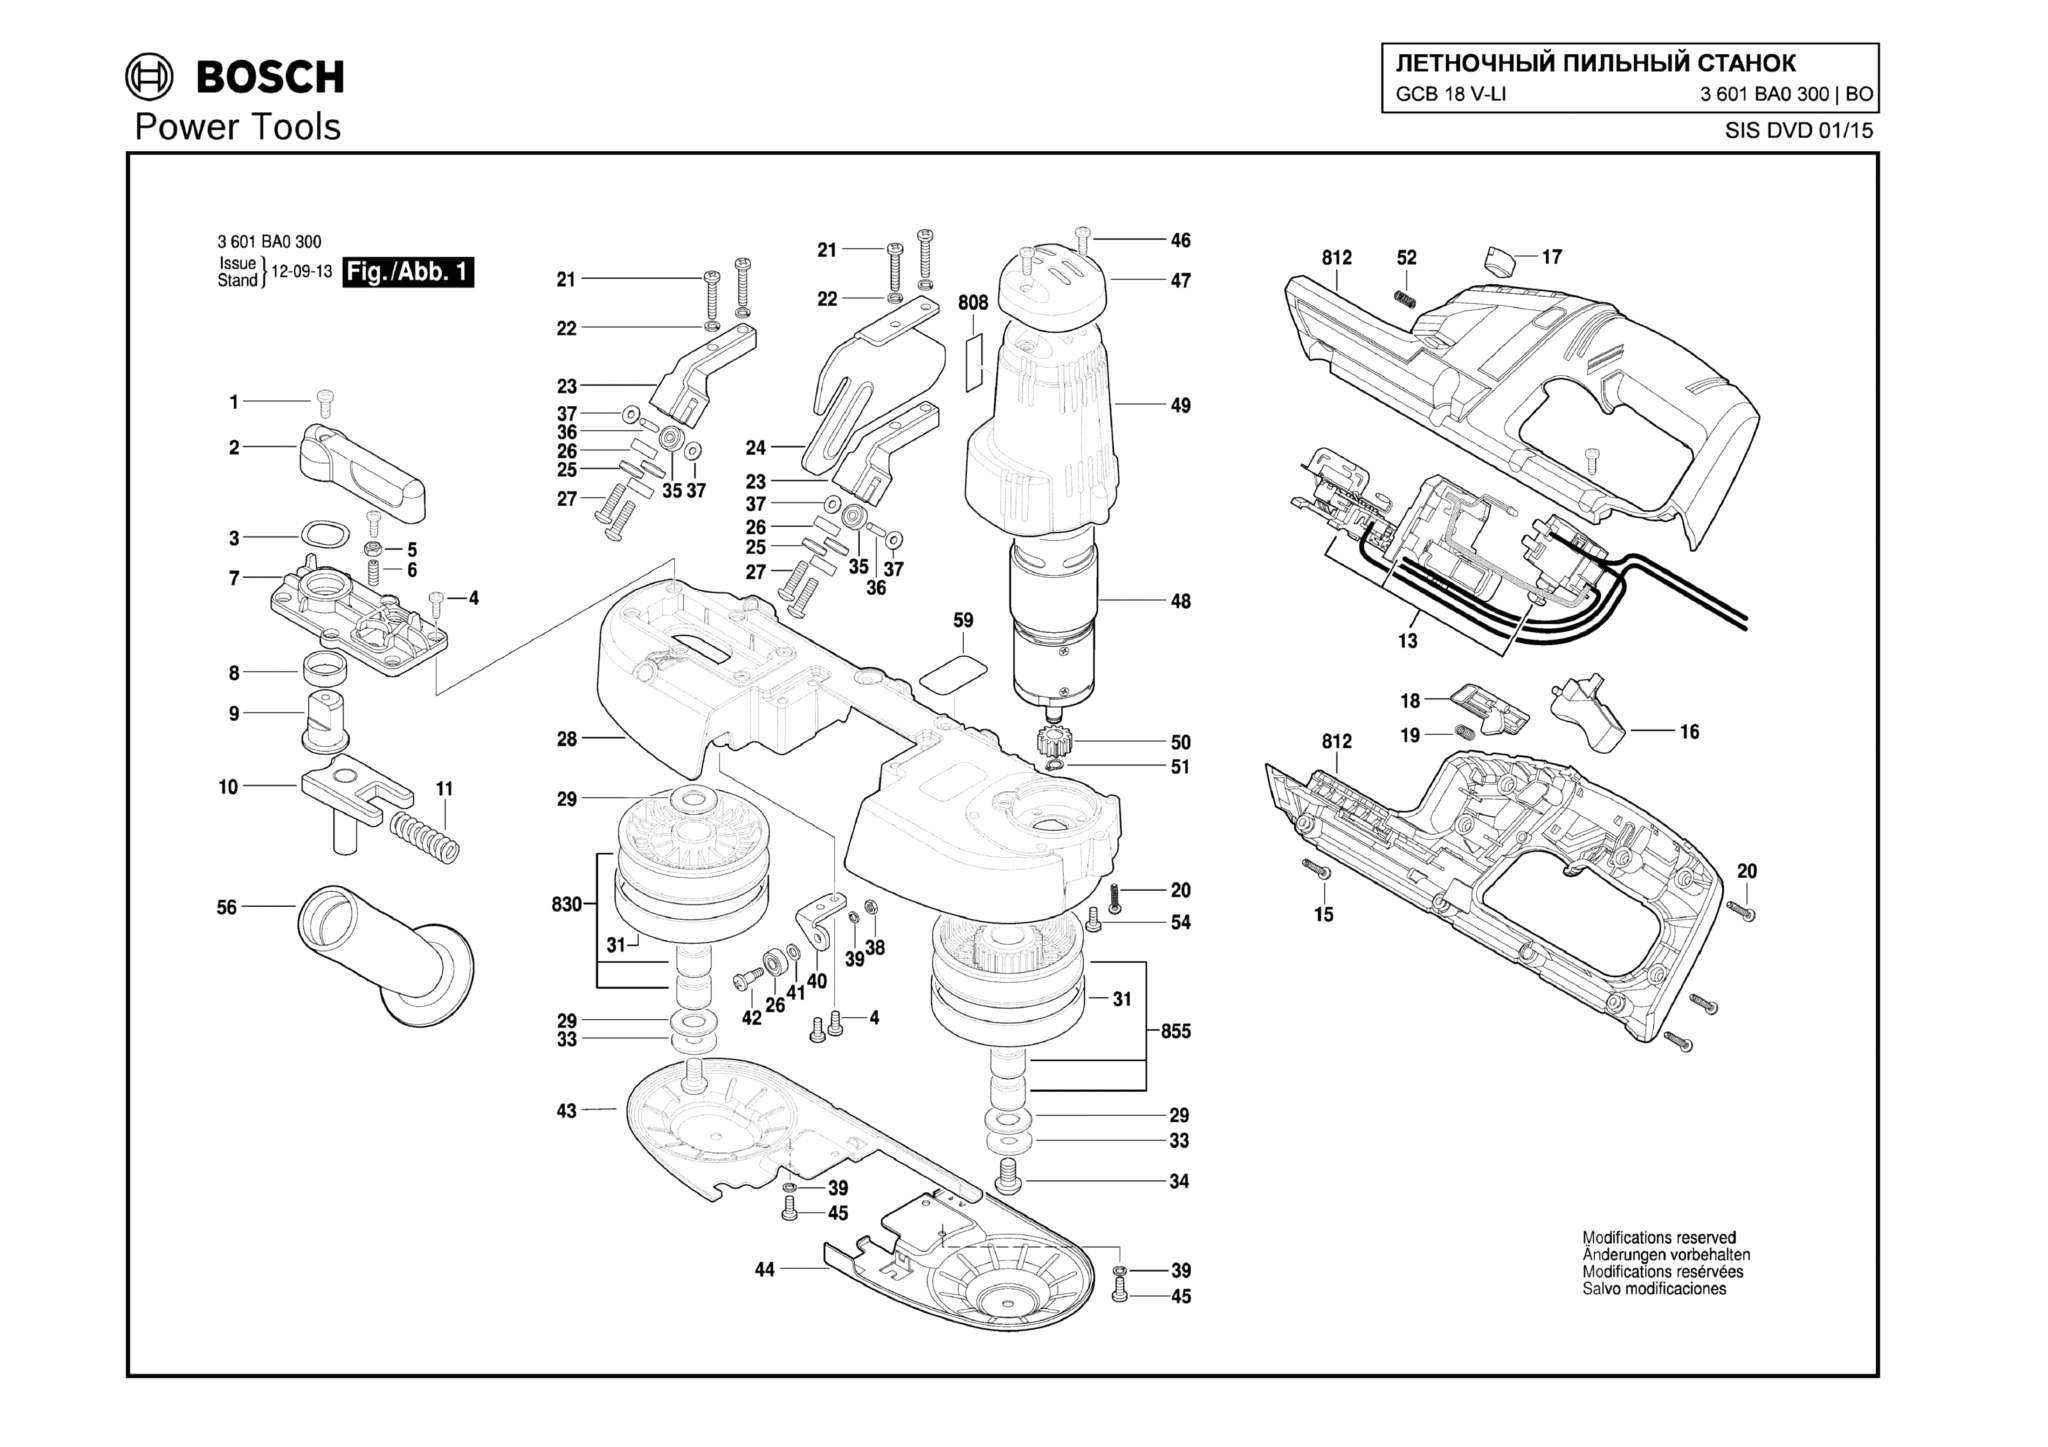 Запчасти, схема и деталировка Bosch GCB 18 V-LI (ТИП 3601BA0300)